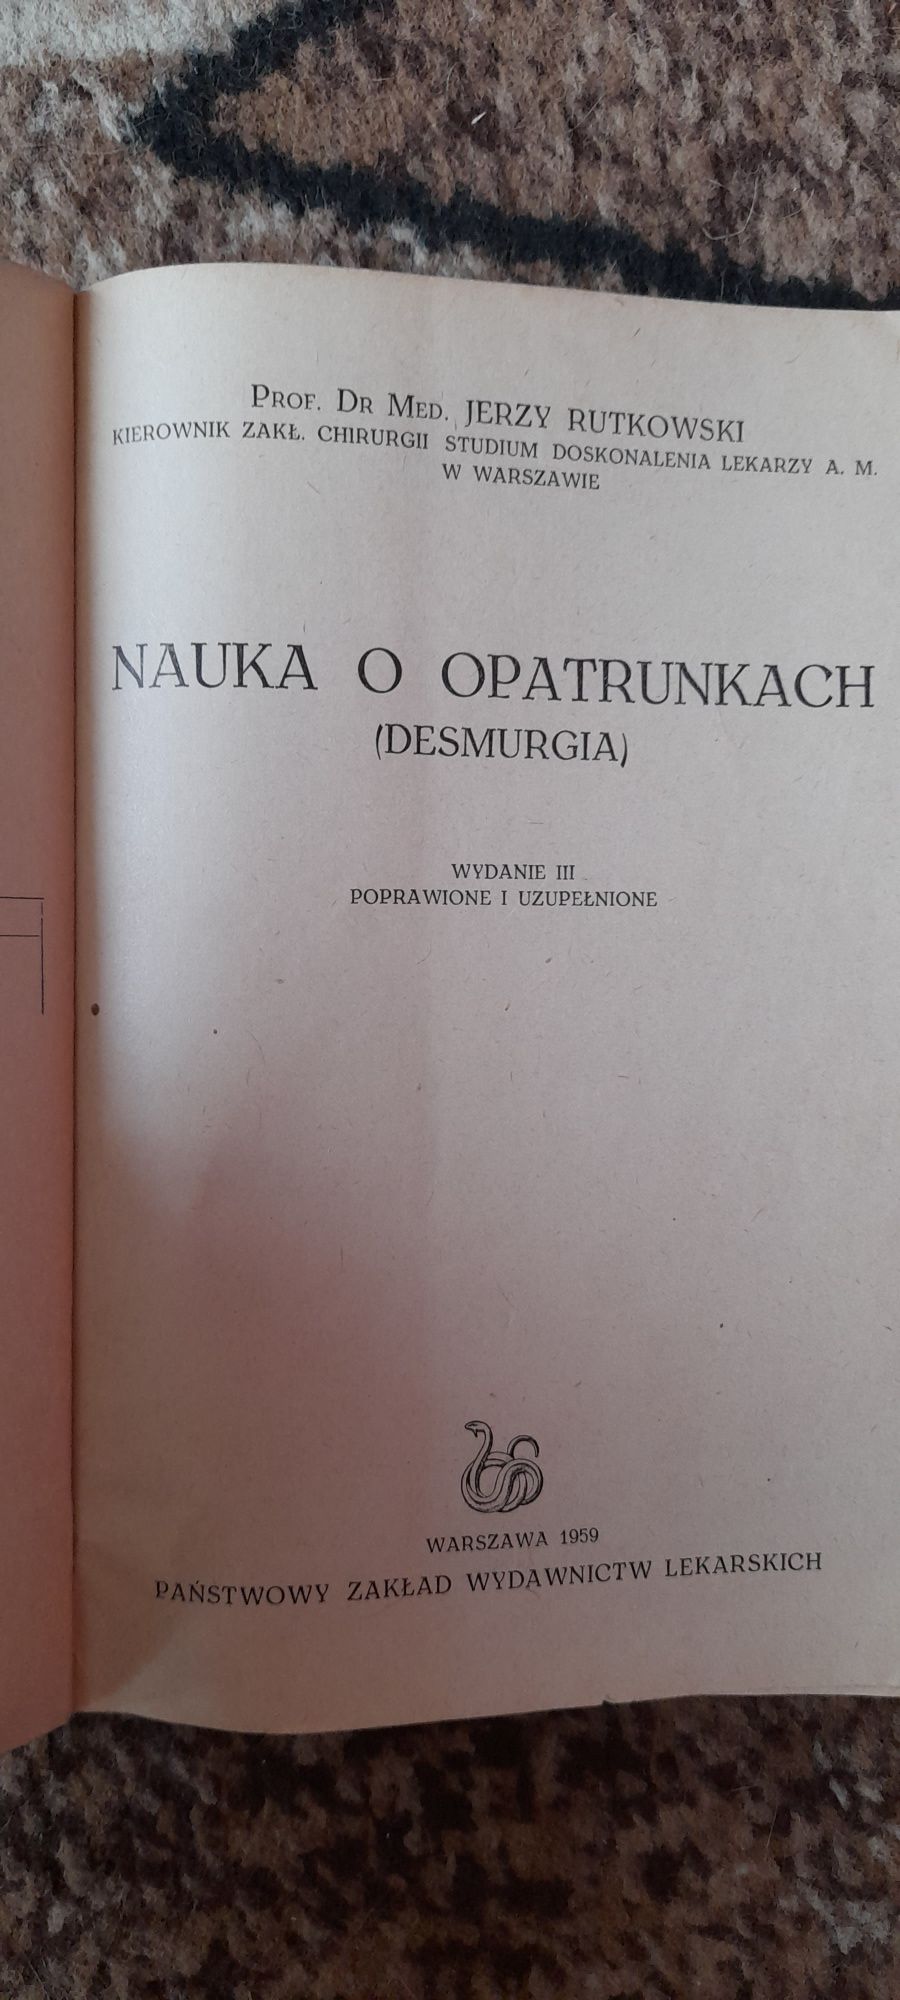 Nauka o opatrunķach (desmurgia) - Jerzy Rutkowski wyd III 1959